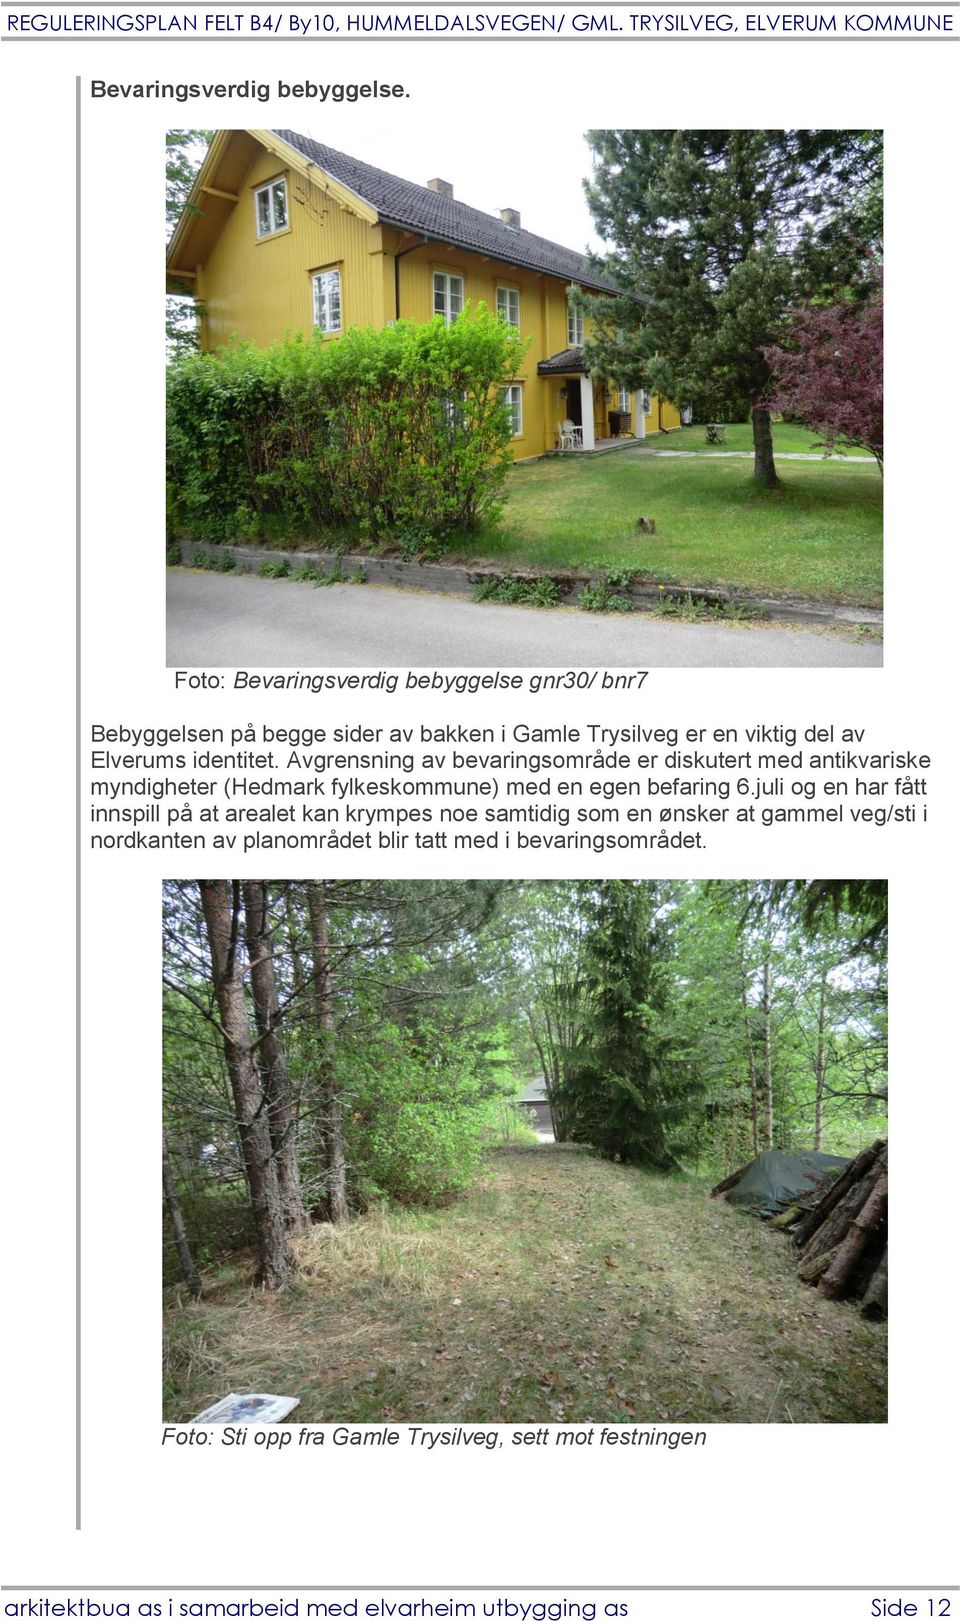 Avgrensning av bevaringsområde er diskutert med antikvariske myndigheter (Hedmark fylkeskommune) med en egen befaring 6.